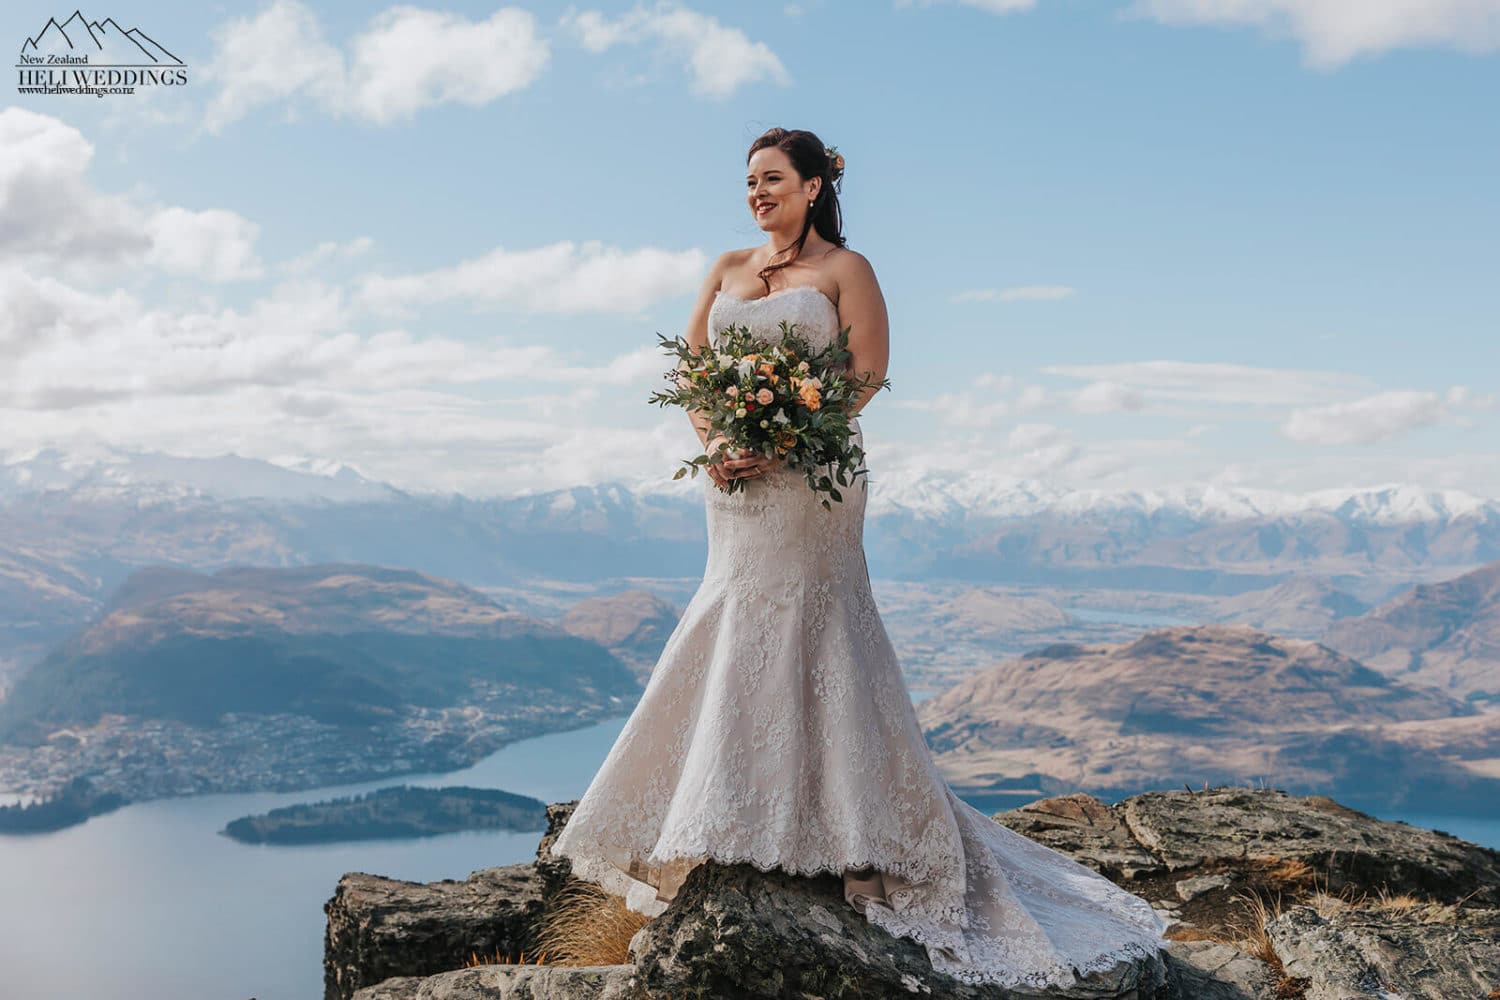 Winter Wedding in New Zealand, Queenstown mountain wedding packages